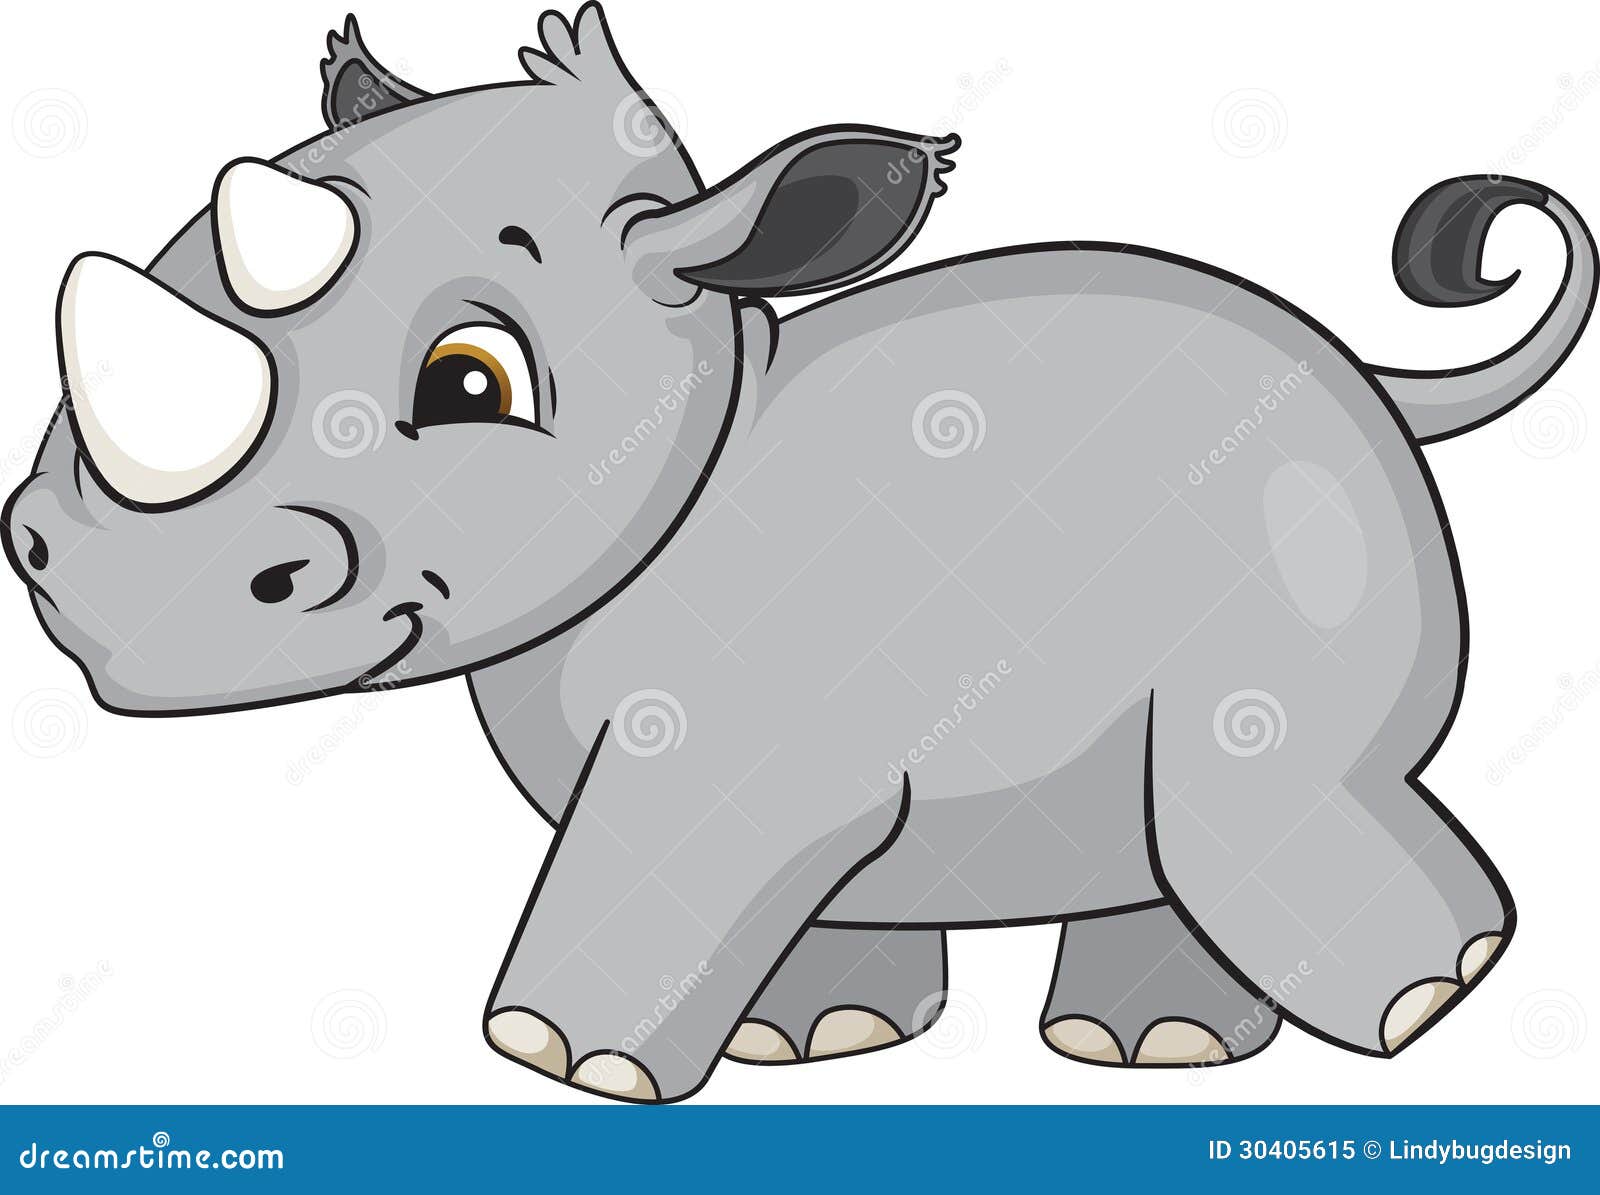 baby rhino clipart - photo #11